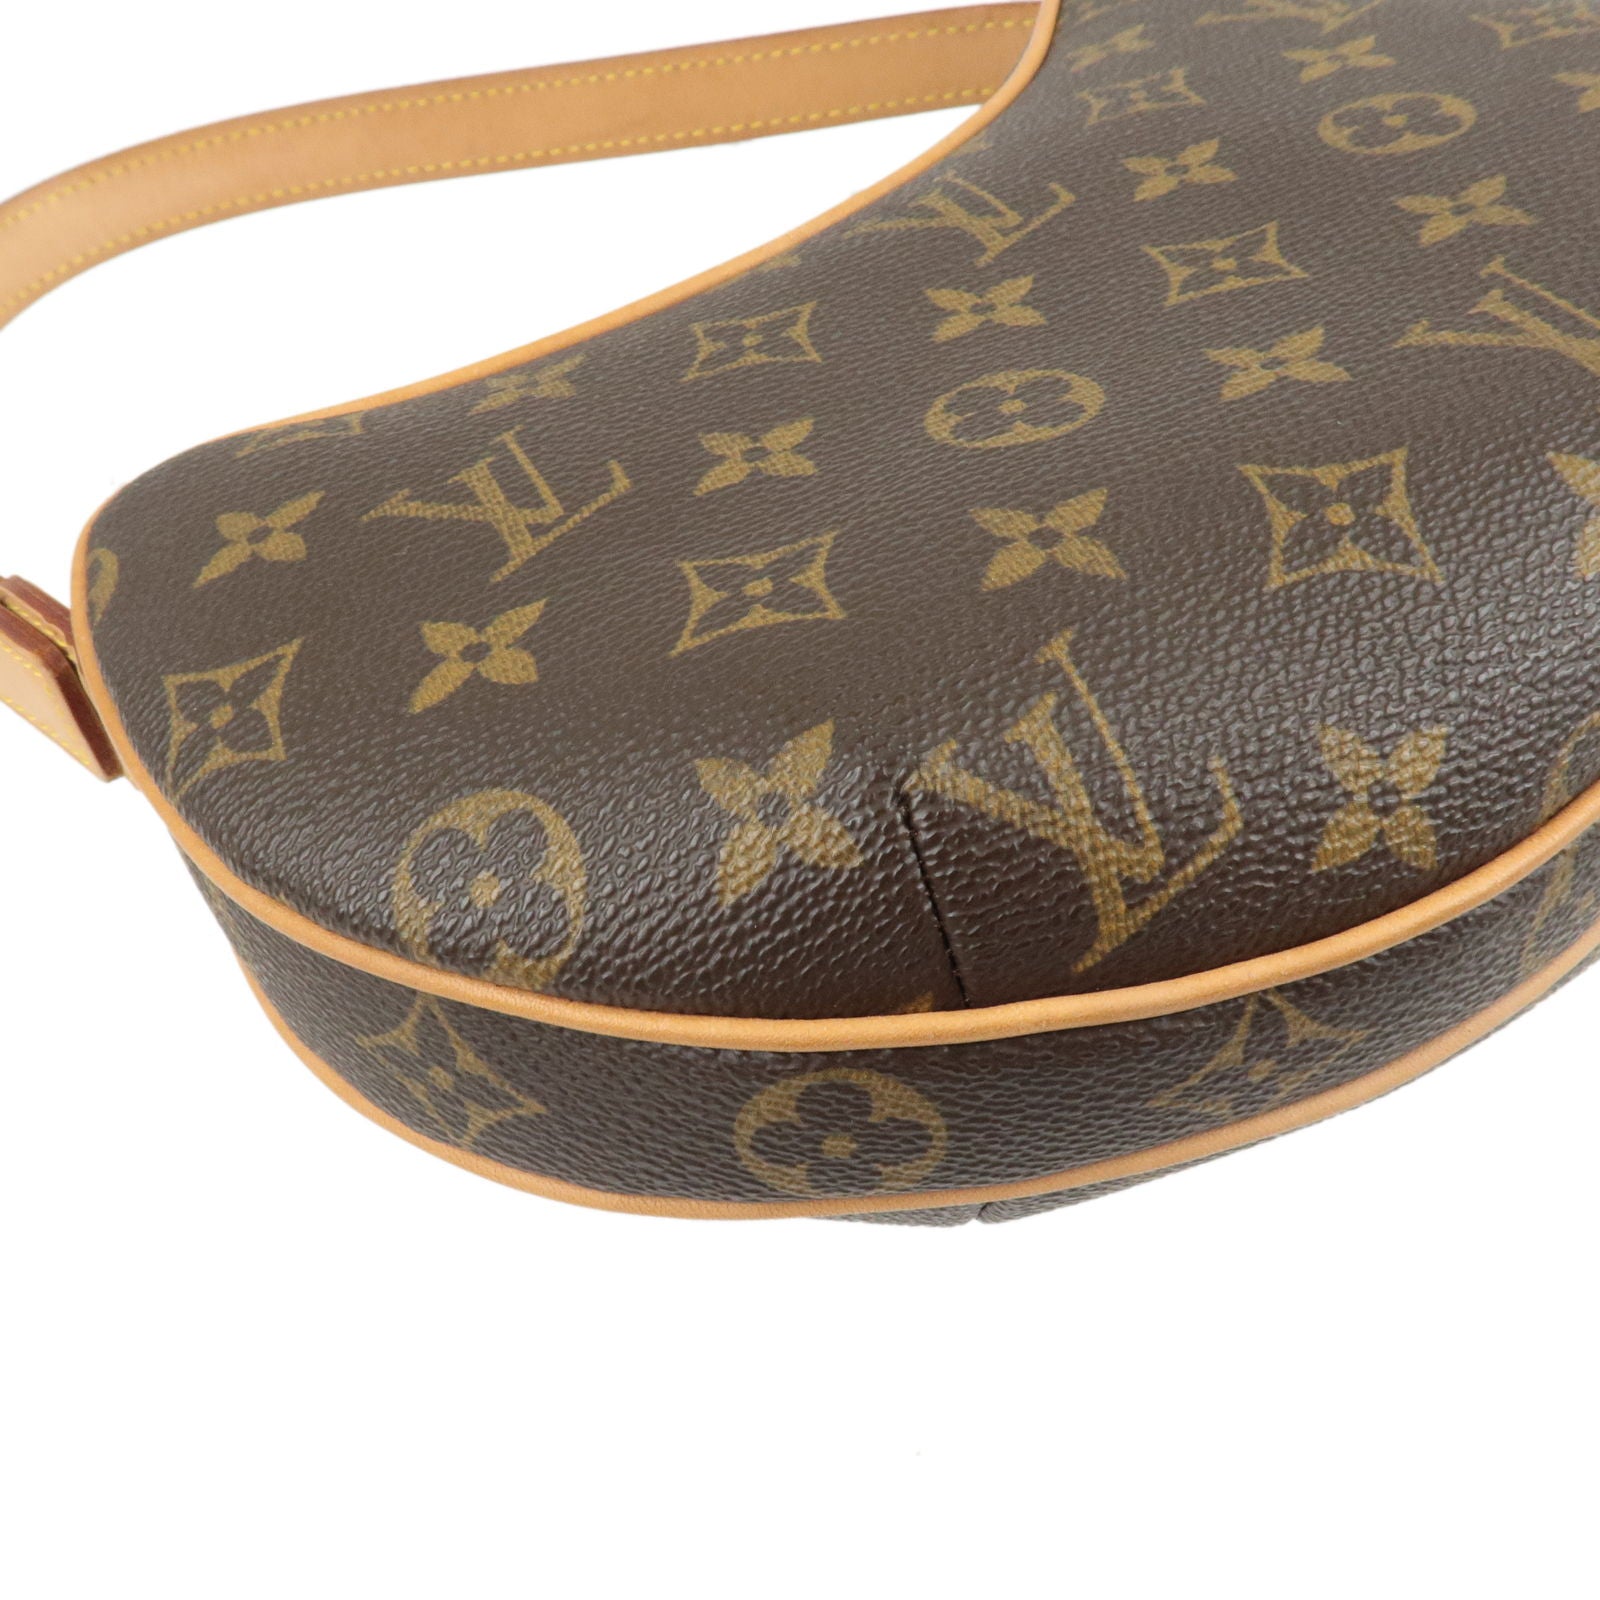 Louis - M51510 – dct - Pochette - louis vuitton 2020 pre owned graceful pm  tote bag item - ep_vintage luxury Store - Monogram - Shoulder - Vuitton -  Croissant - Bag